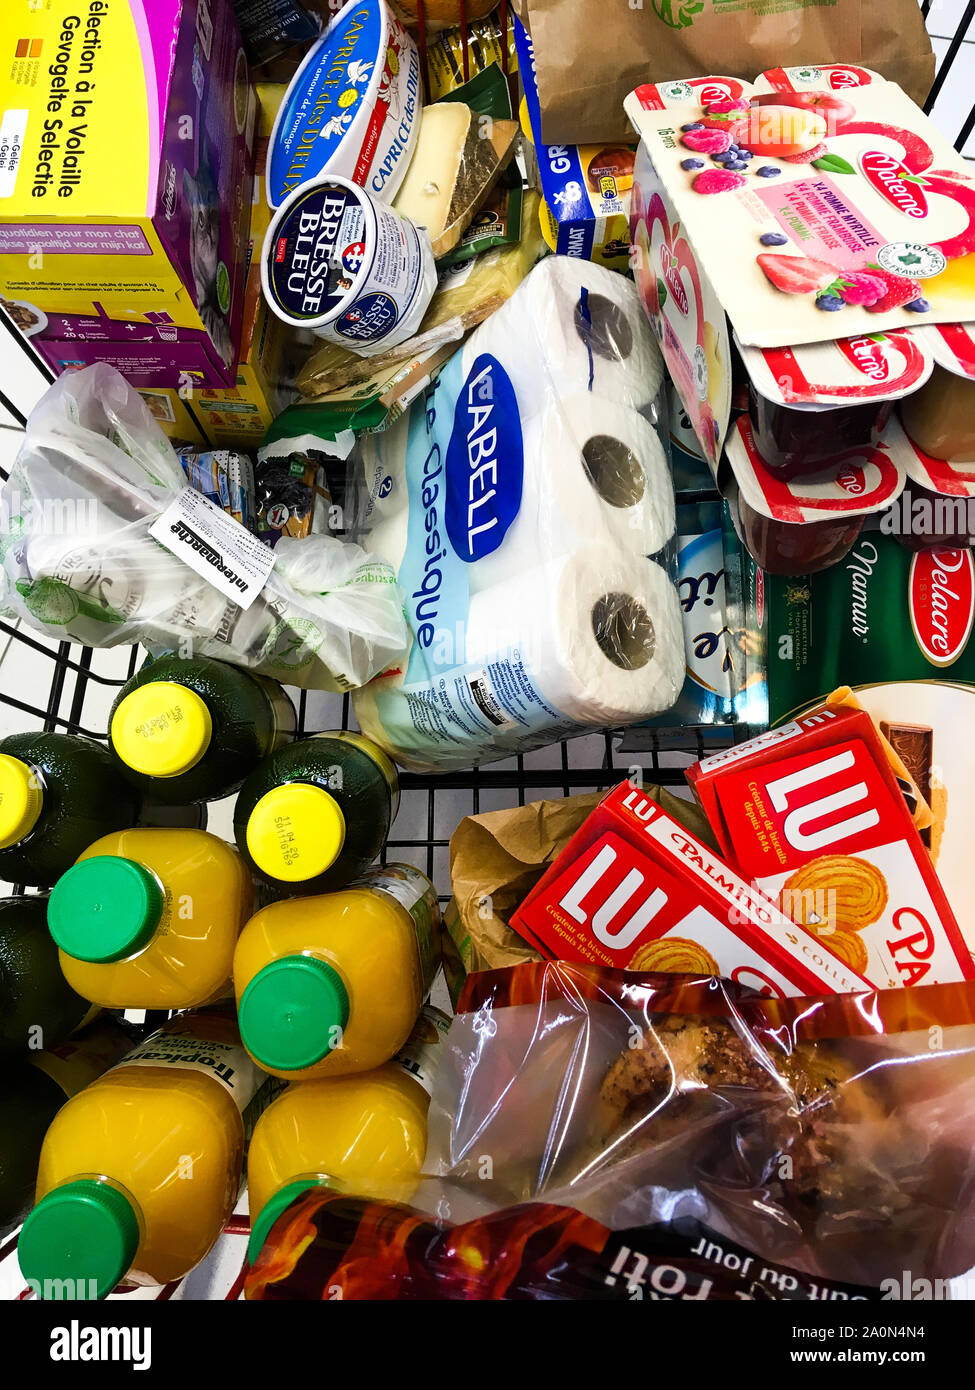 Las compras en el supermercado, Lyon, Francia. Foto de stock